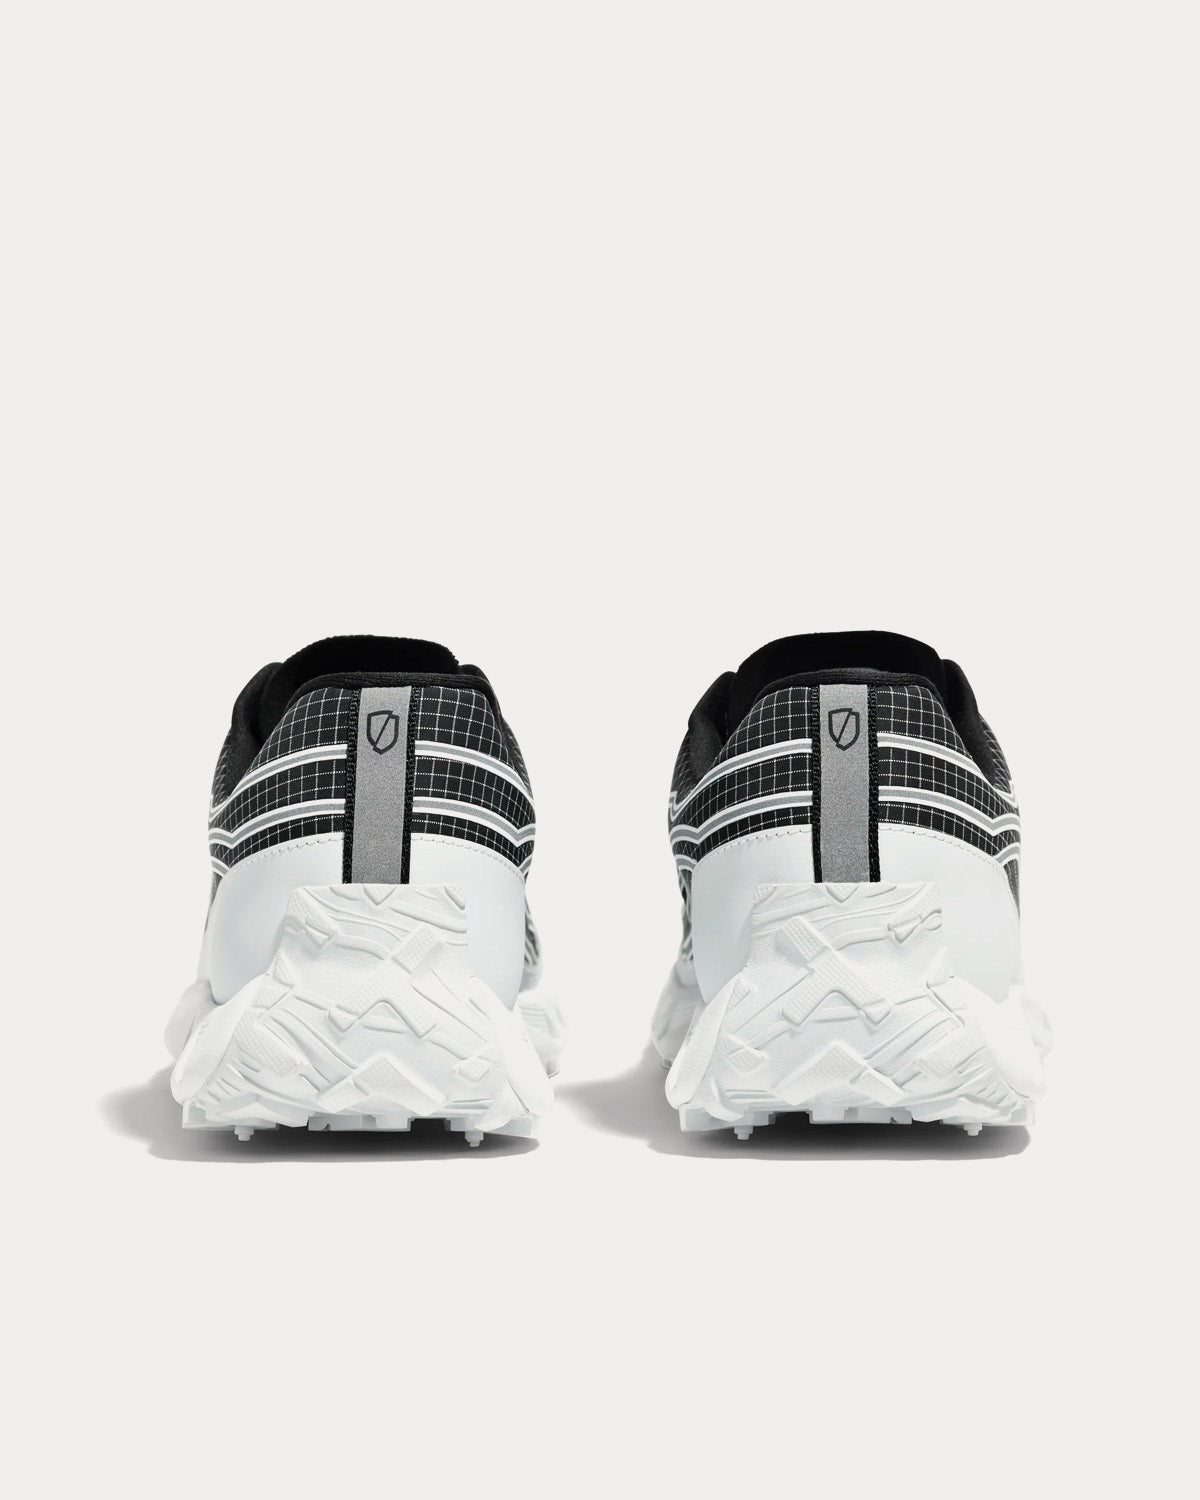 Norda - 002 Black / White Running Shoes